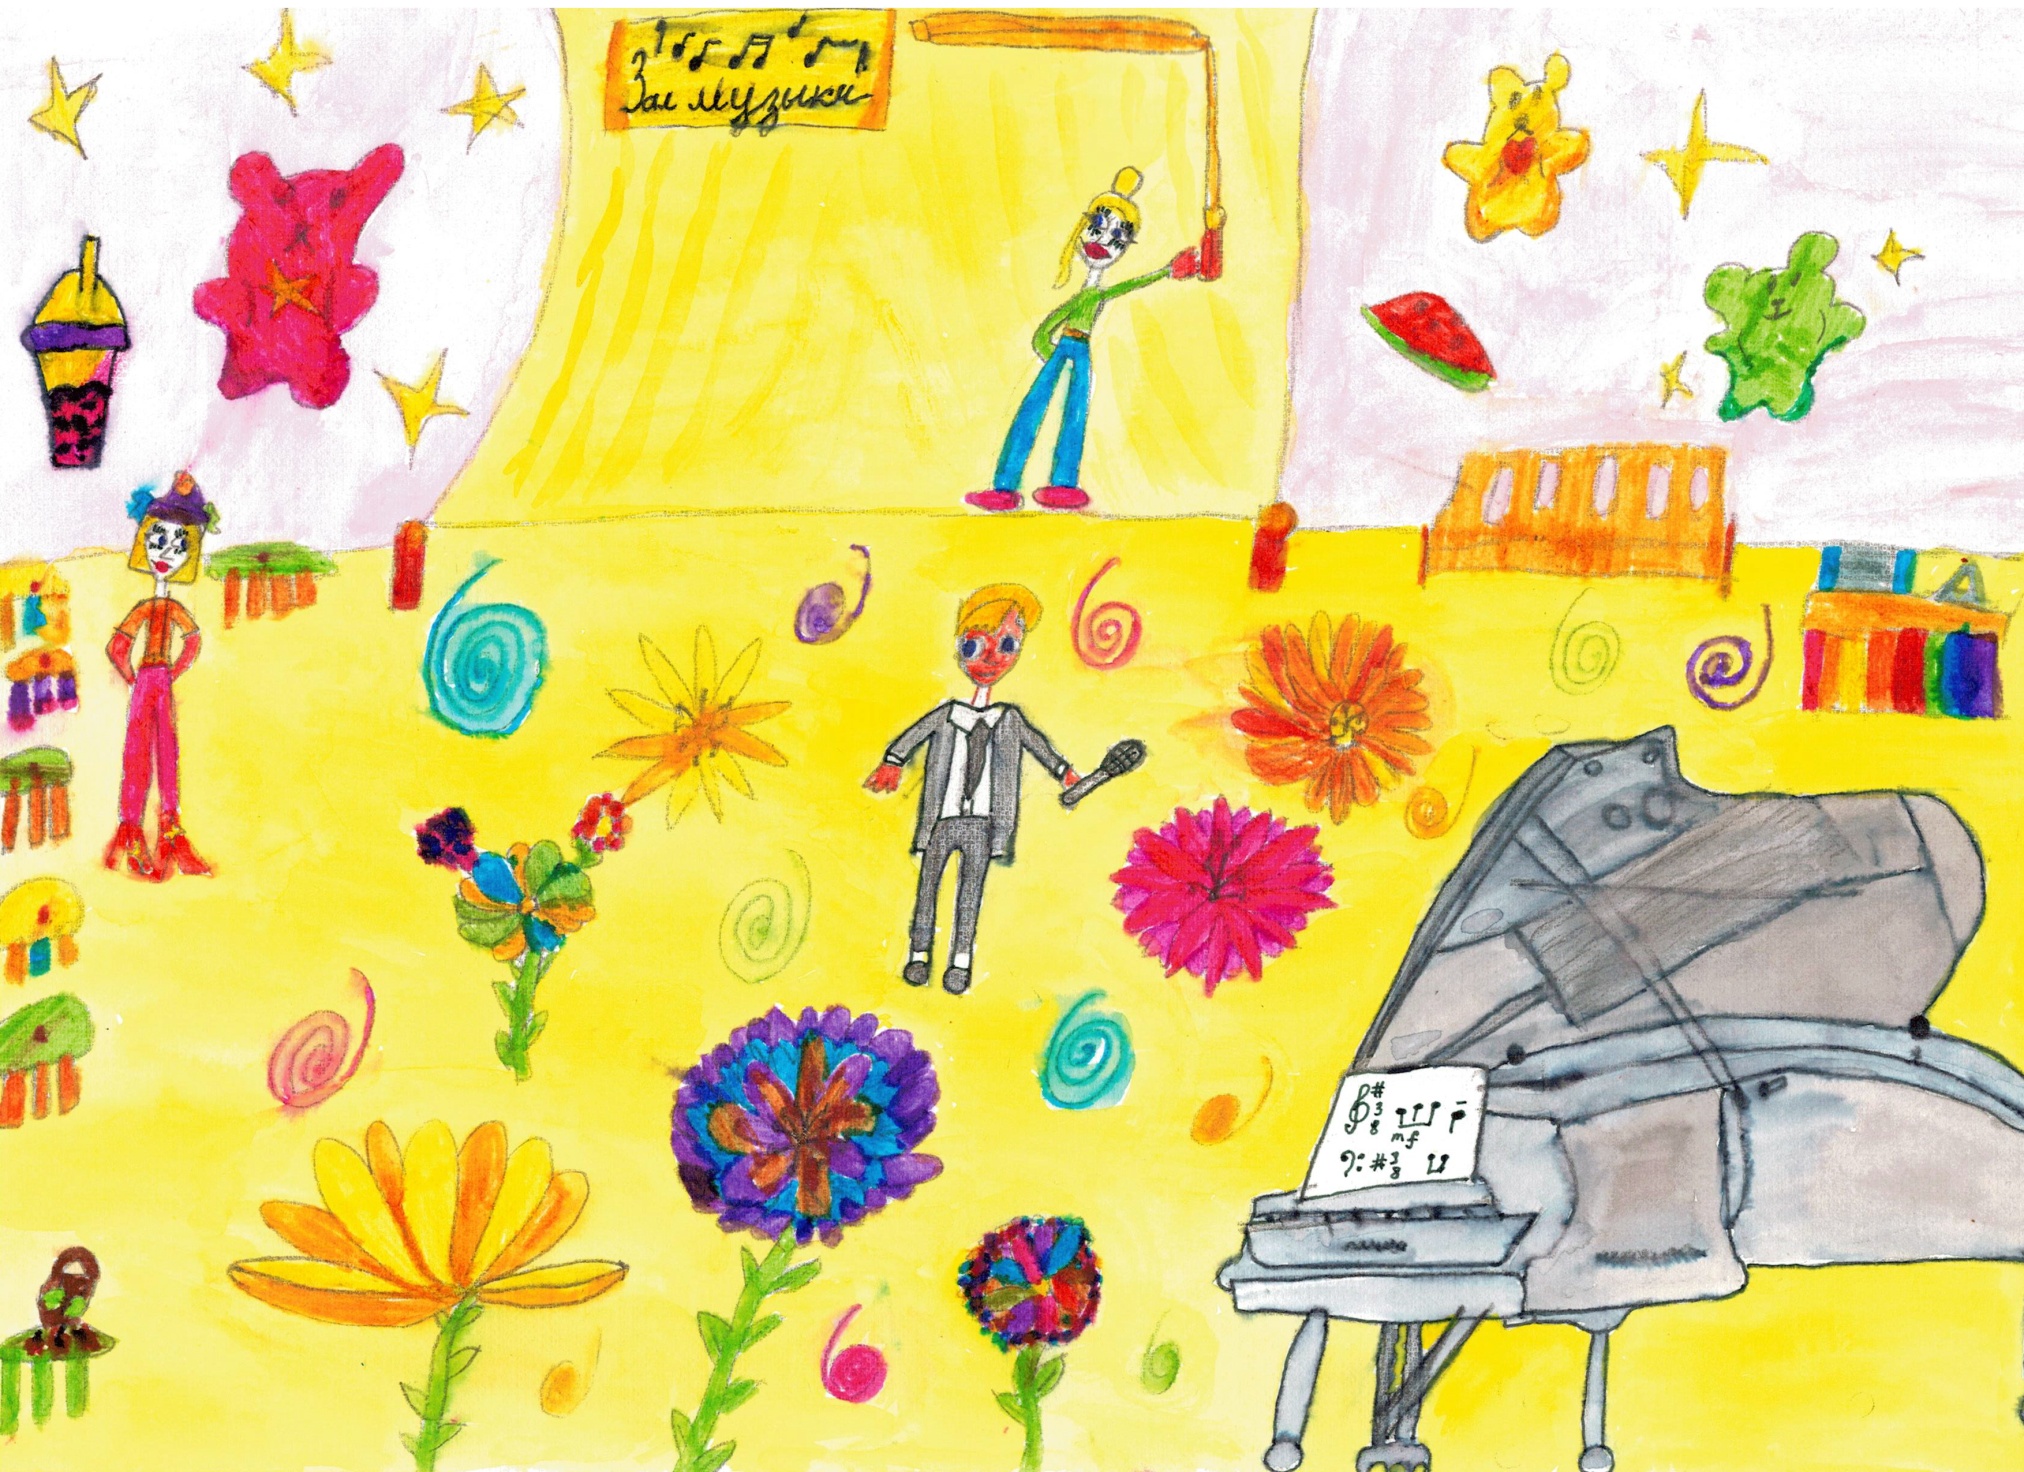 Плахутин Михаил (5 лет), учащийся ГБОУ «Школа № 2114» г. Москвы с рисунком, выполненном в смешанной технике